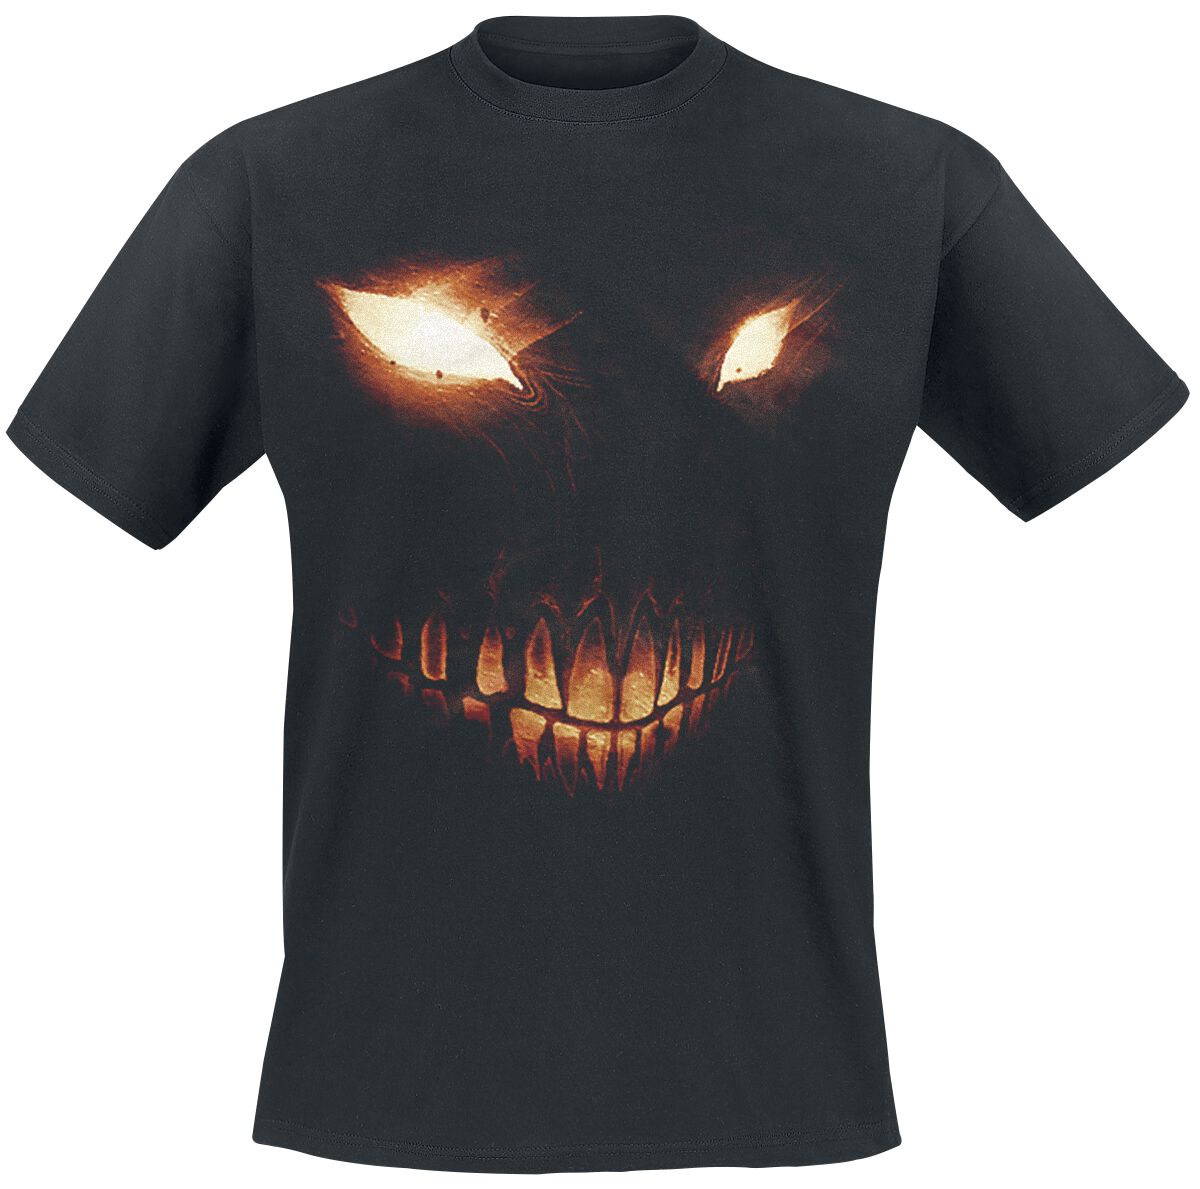 Disturbed T-Shirt - Bright Eyes - L bis 5XL - für Männer - Größe XXL - schwarz  - Lizenziertes Merchandise!